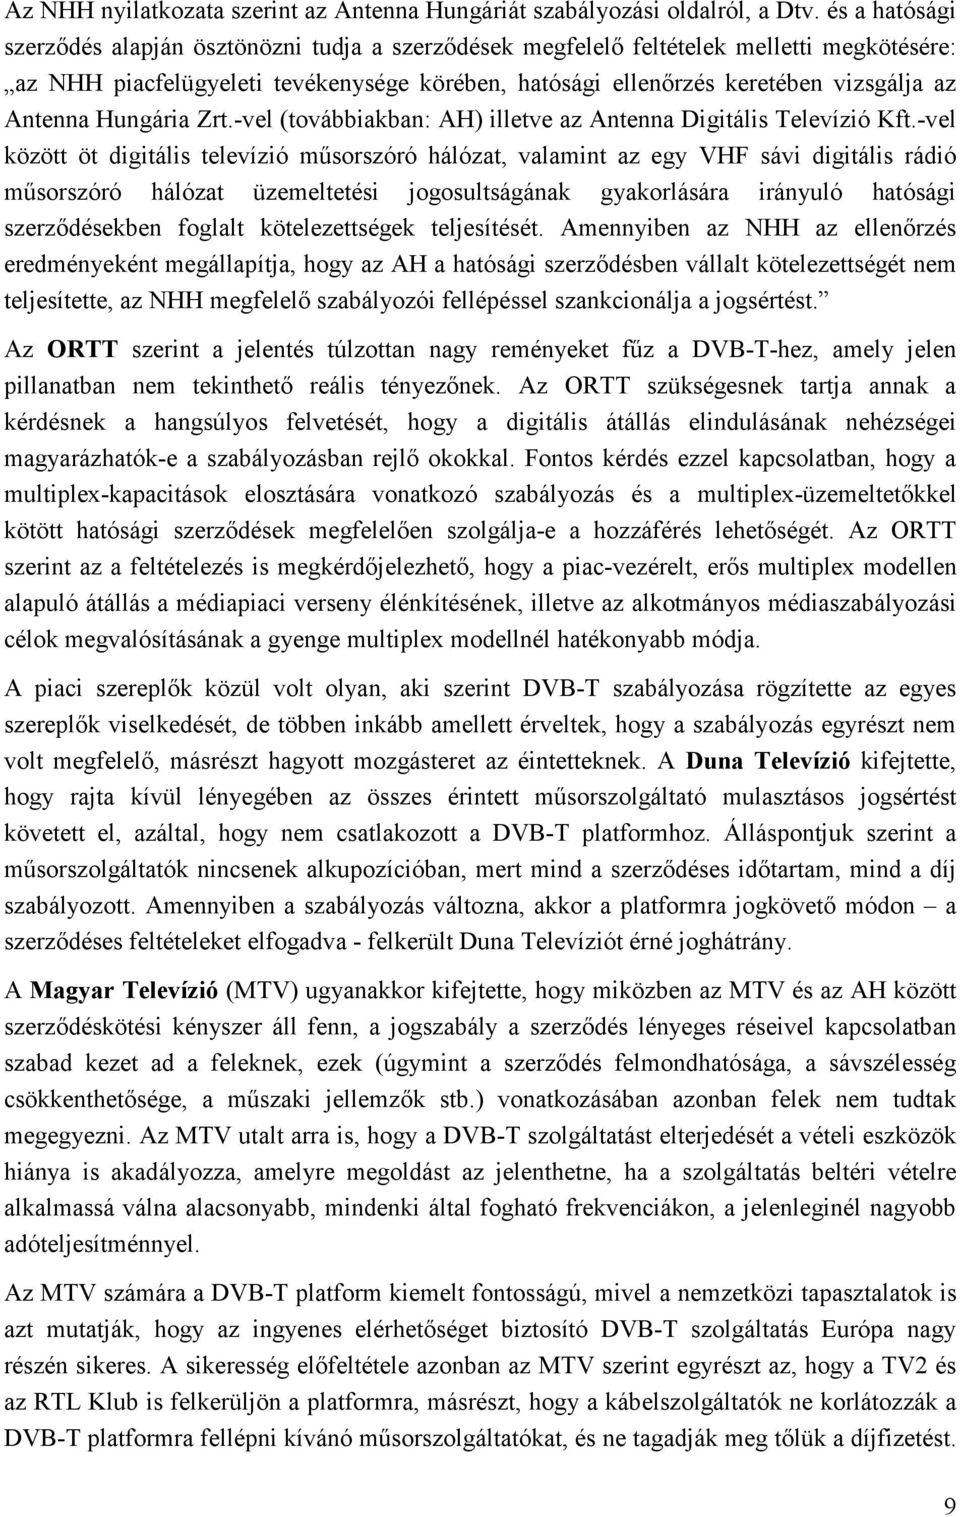 Antenna Hungária Zrt.-vel (továbbiakban: AH) illetve az Antenna Digitális Televízió Kft.